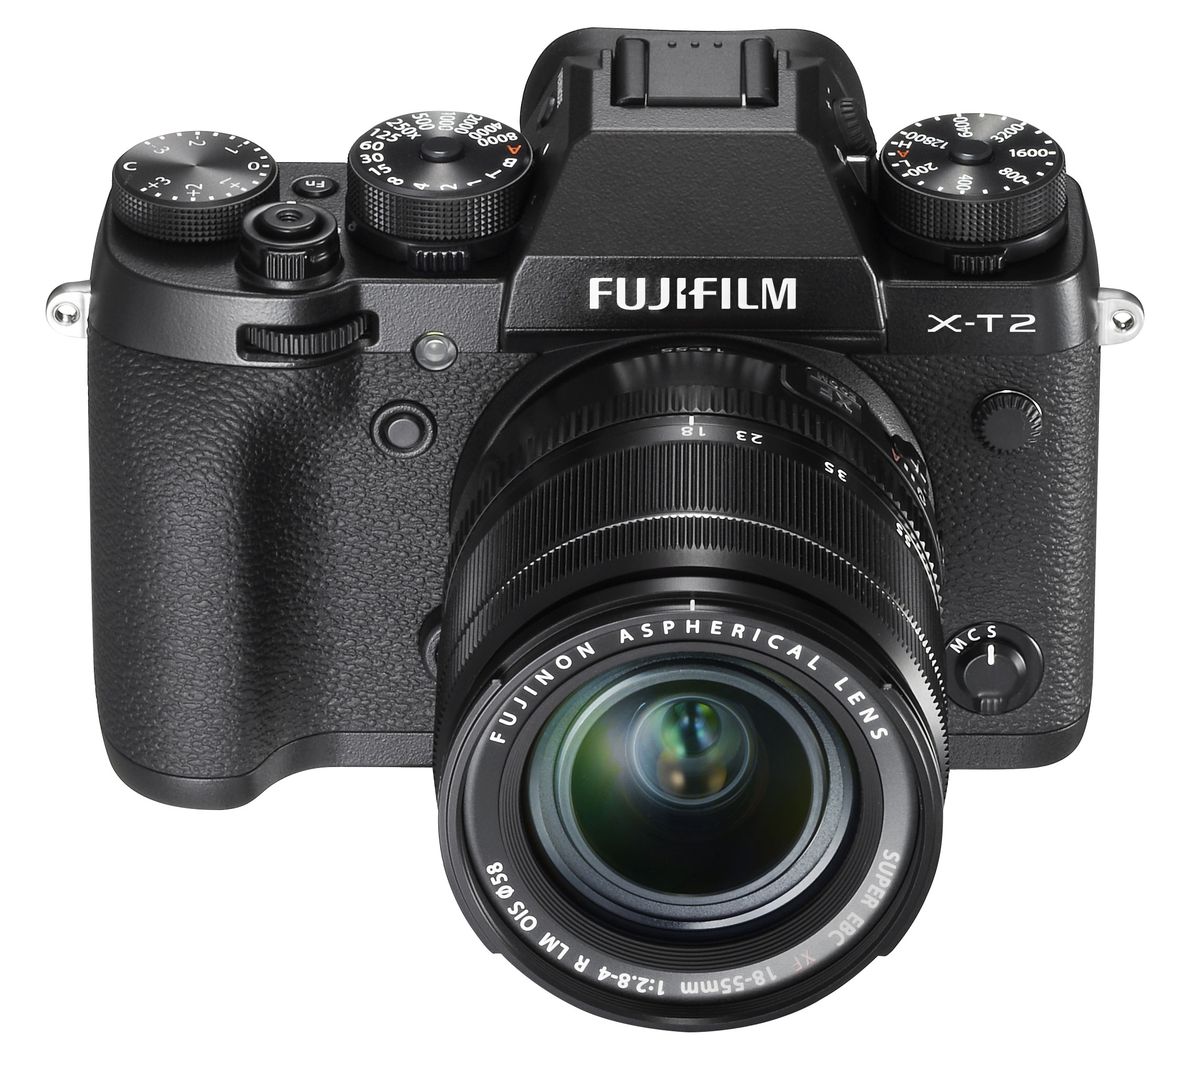 Der Fujifilm X-T2 verfügt über einige Funktionen, die normalerweise mit High-End-DSLRs verbunden sind